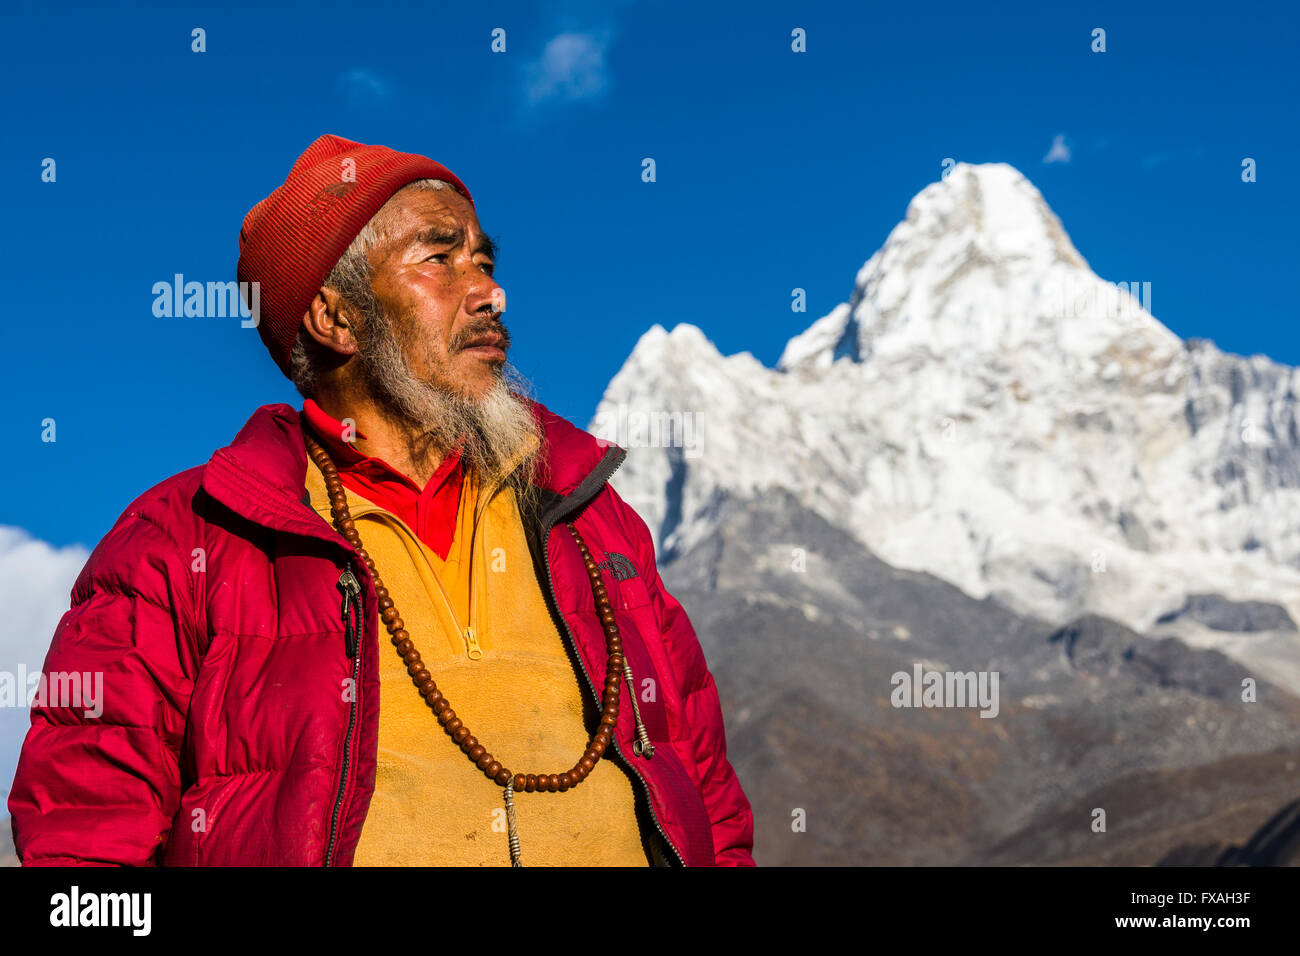 Portrait d'un moine bouddhiste à regarder vers le ciel, l'Ama Dablam (6856m) randonnée dans la distance, Pangboche, Solo Khumbu, Népal Banque D'Images